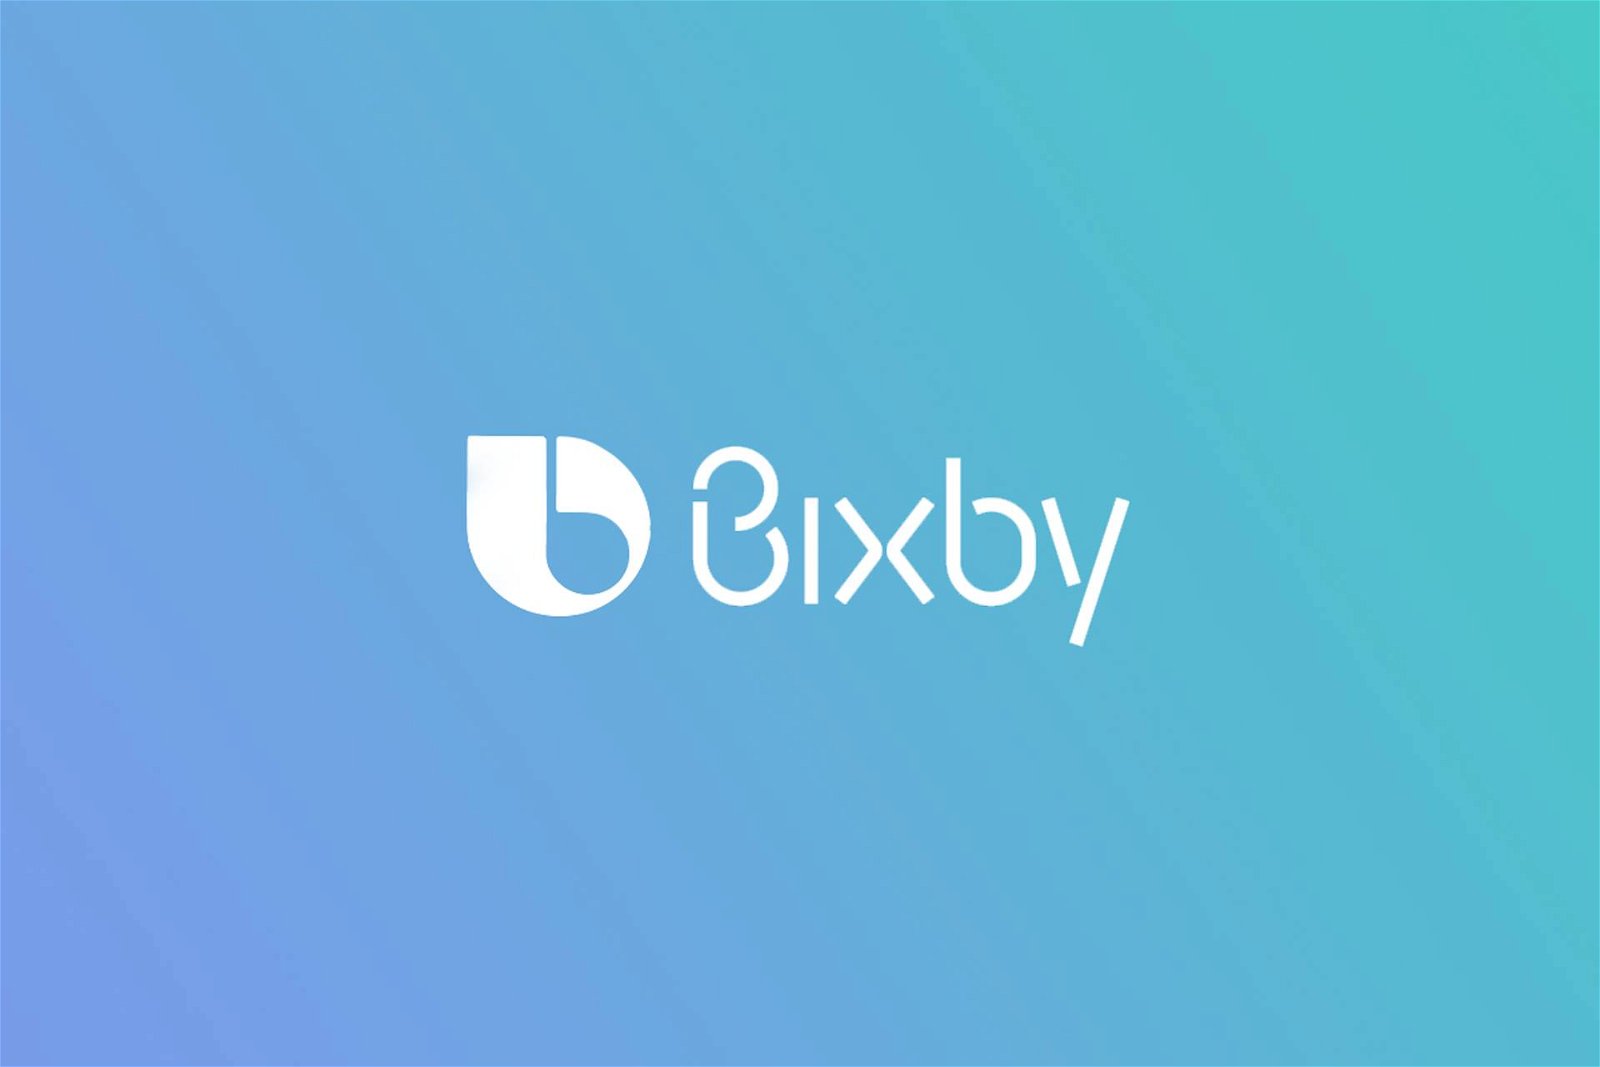 Immagine di Samsung: l’assistente vocale Bixby presto disponibile in italiano